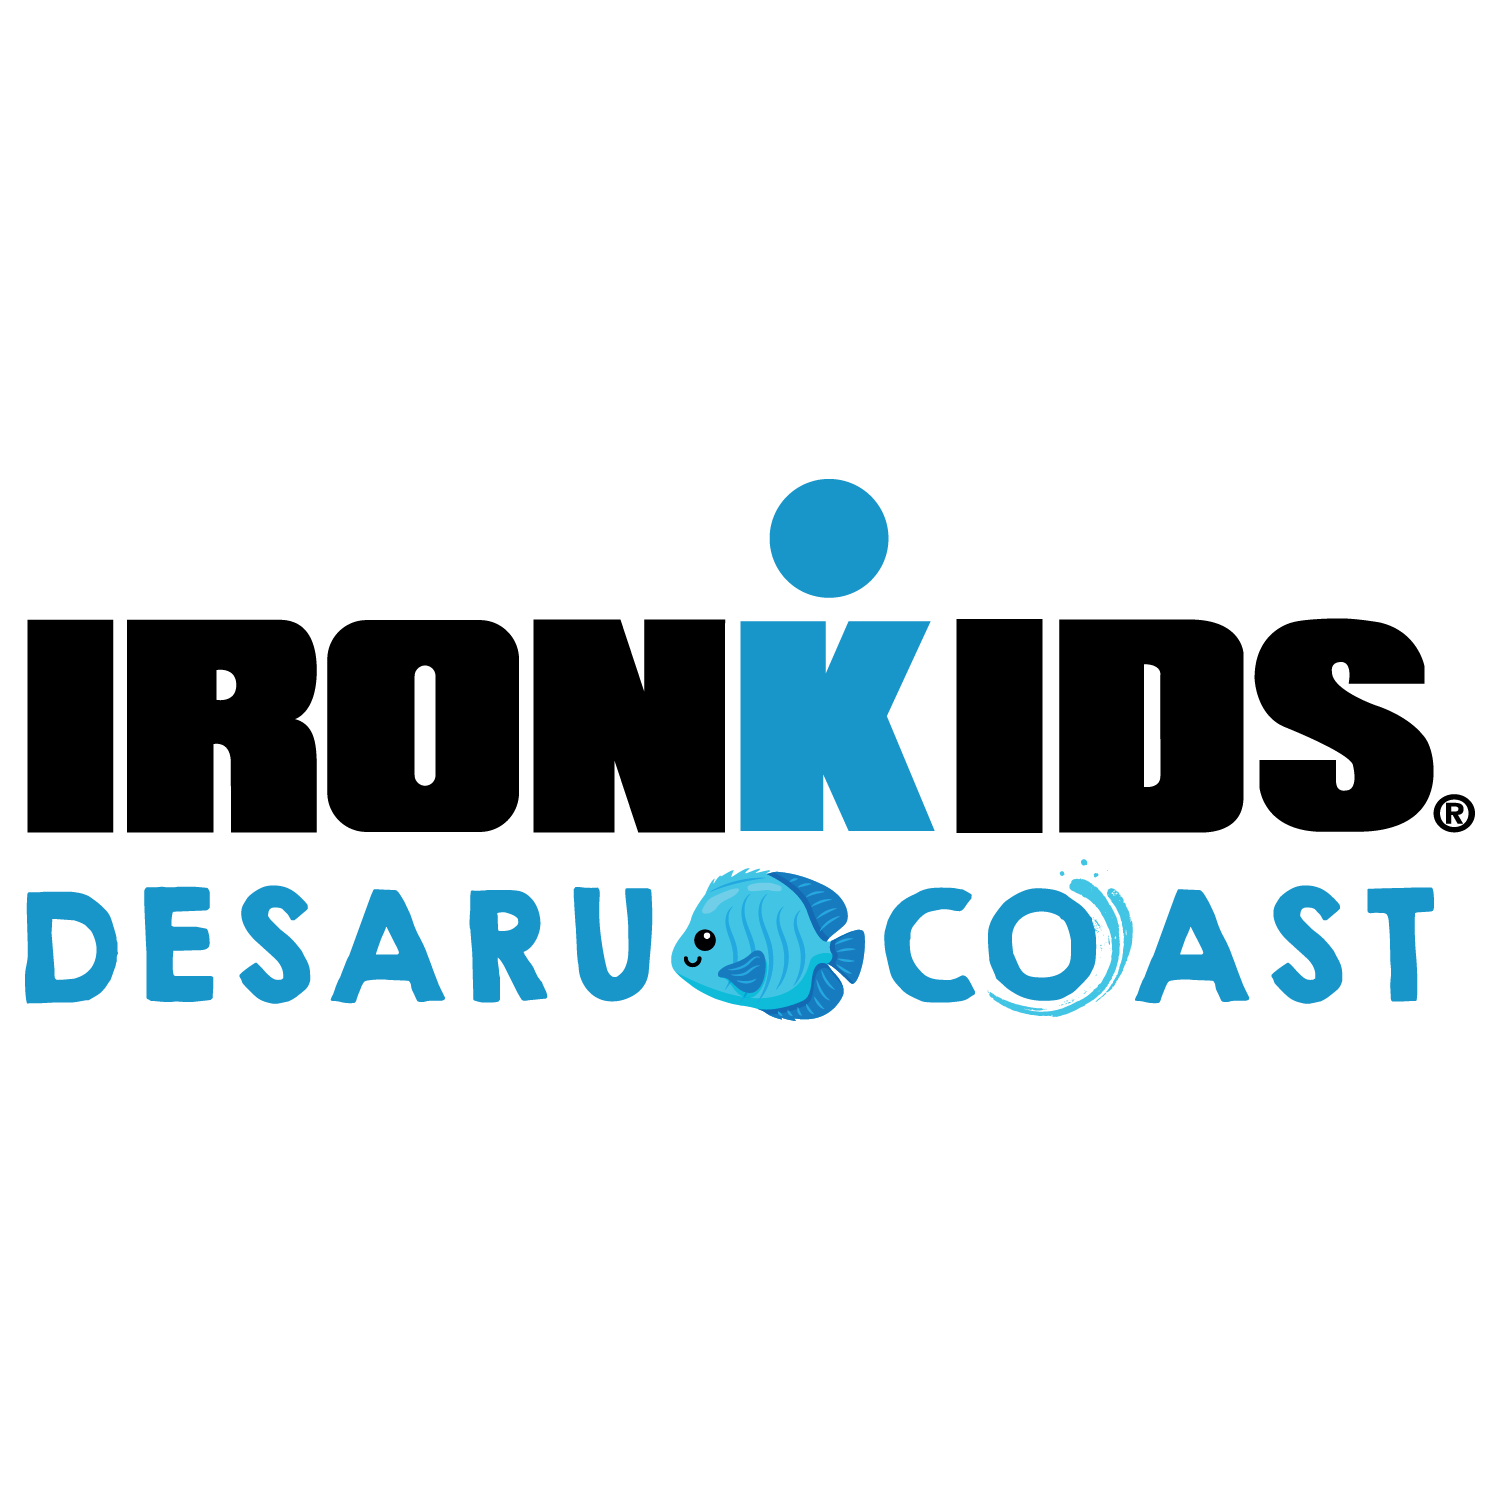 IRONKIDS Desaru Coast Logo